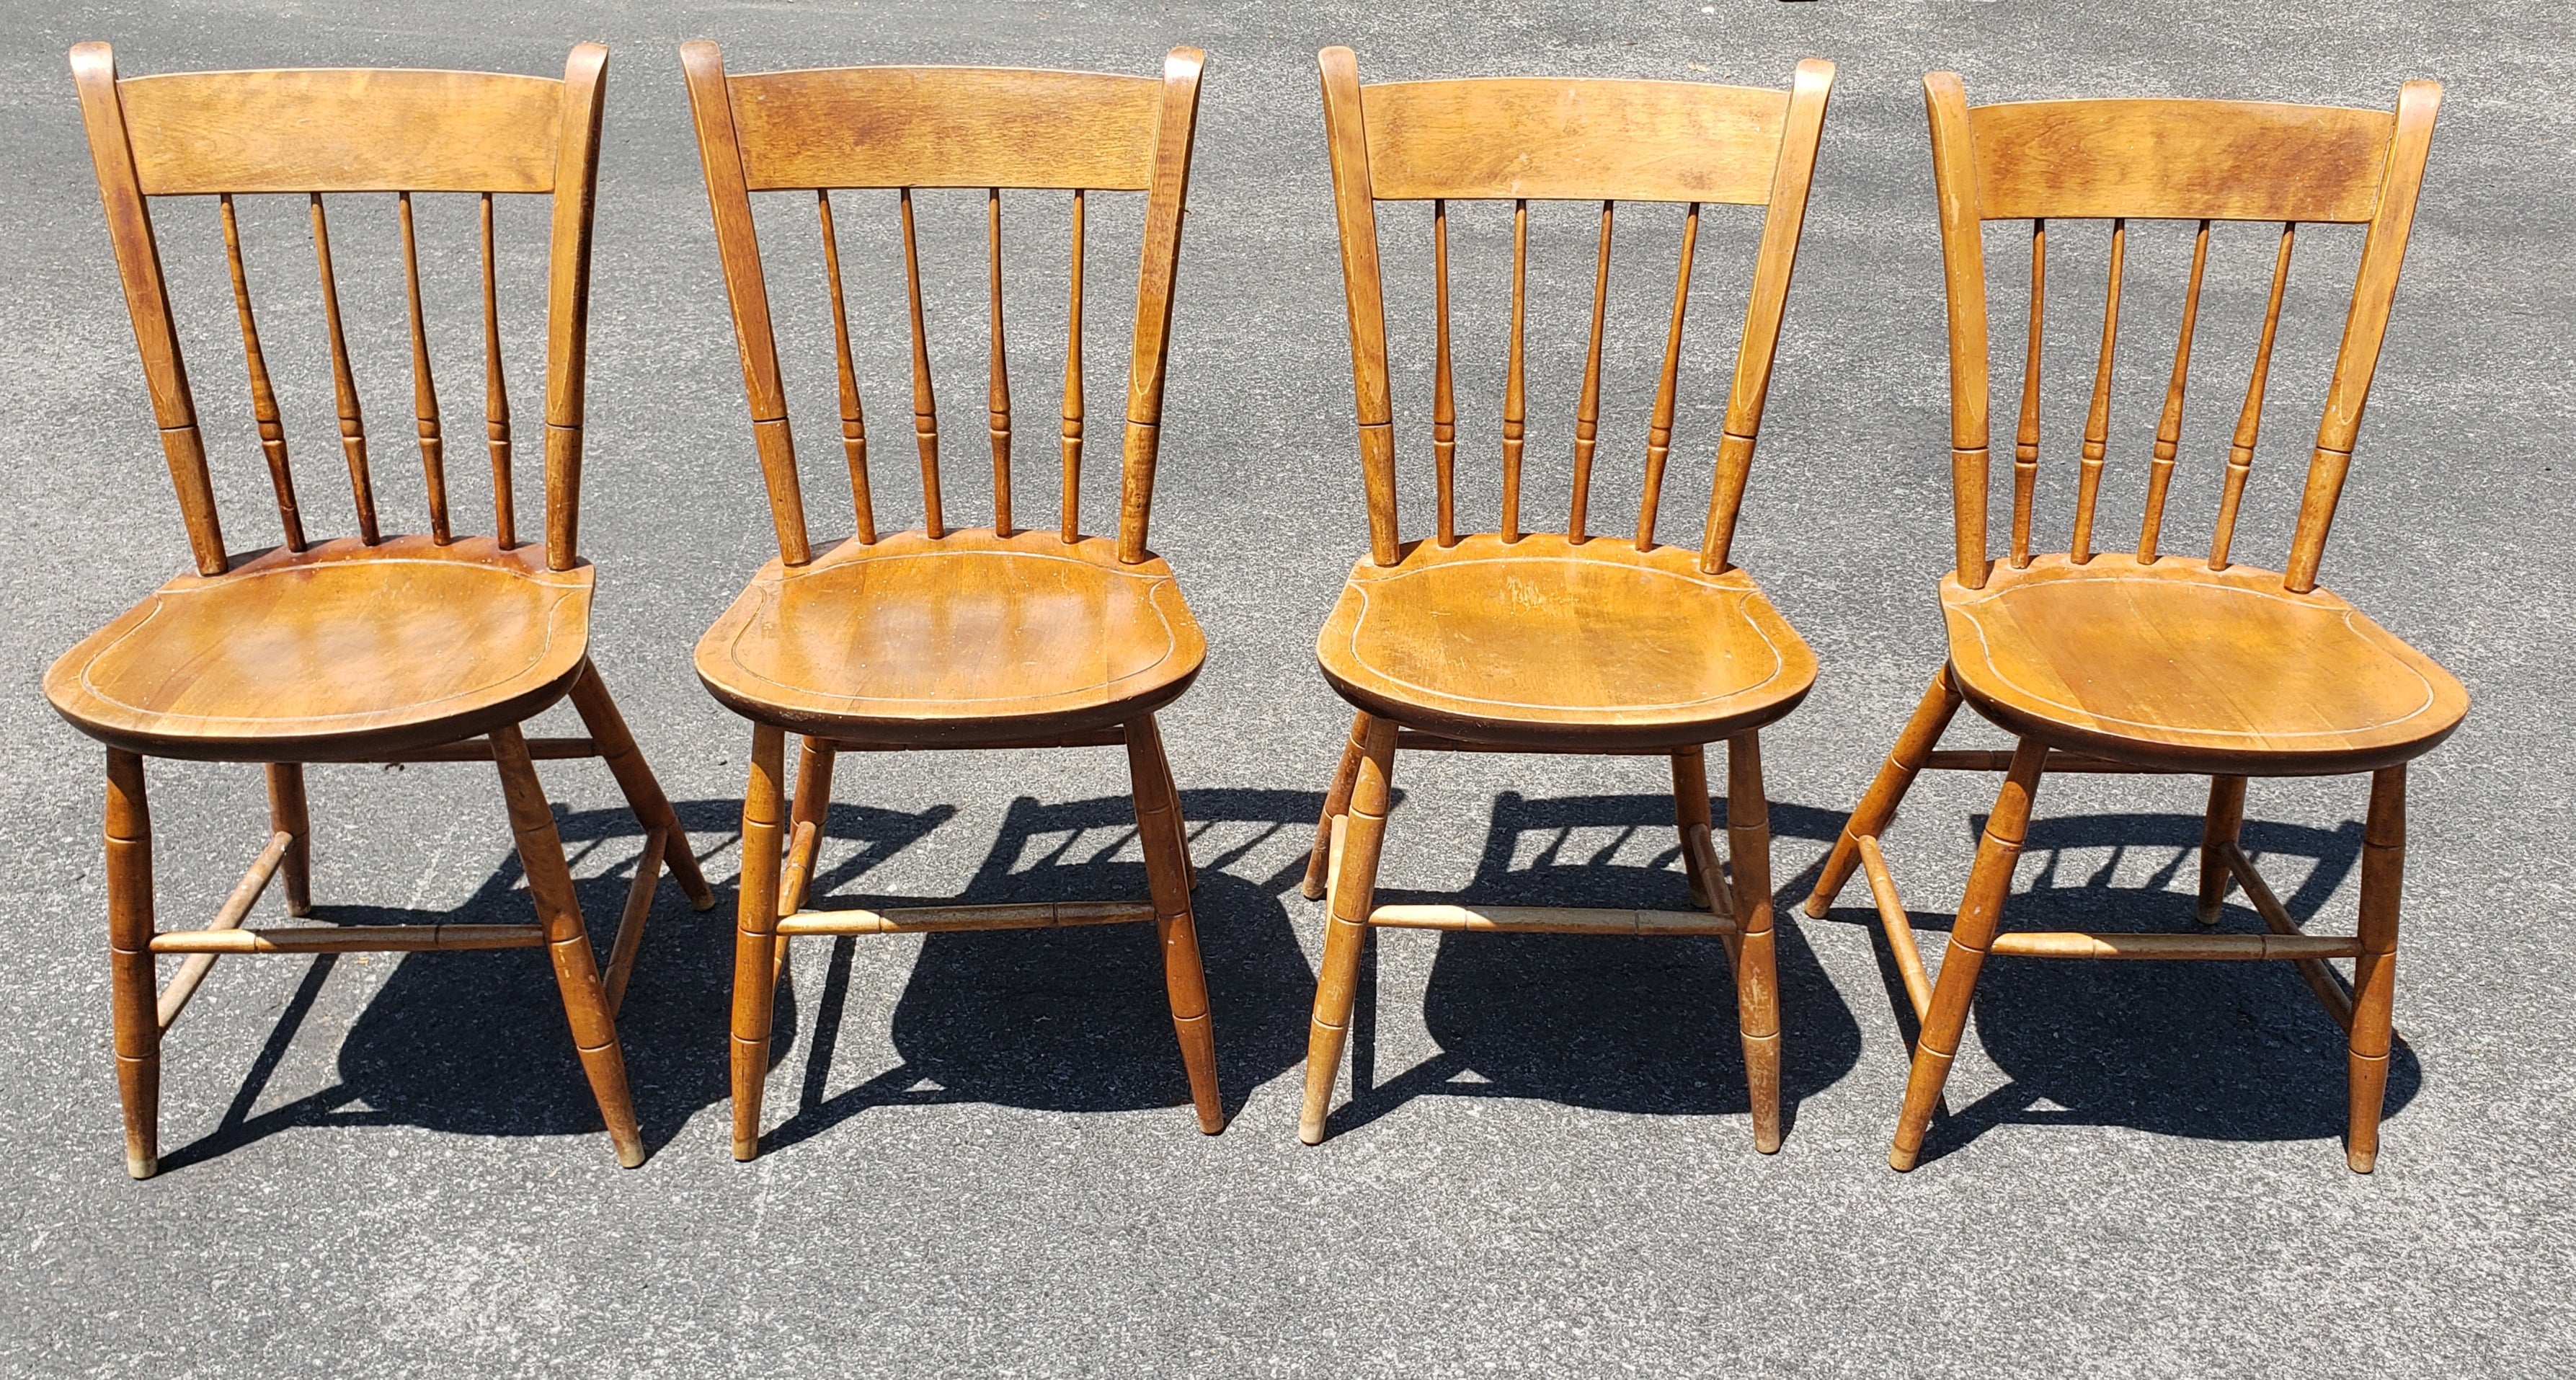 Ensemble de 4 chaises de salle à manger Windsor en érable, en bon état, datant des années 1960. 
Mesure 16,5